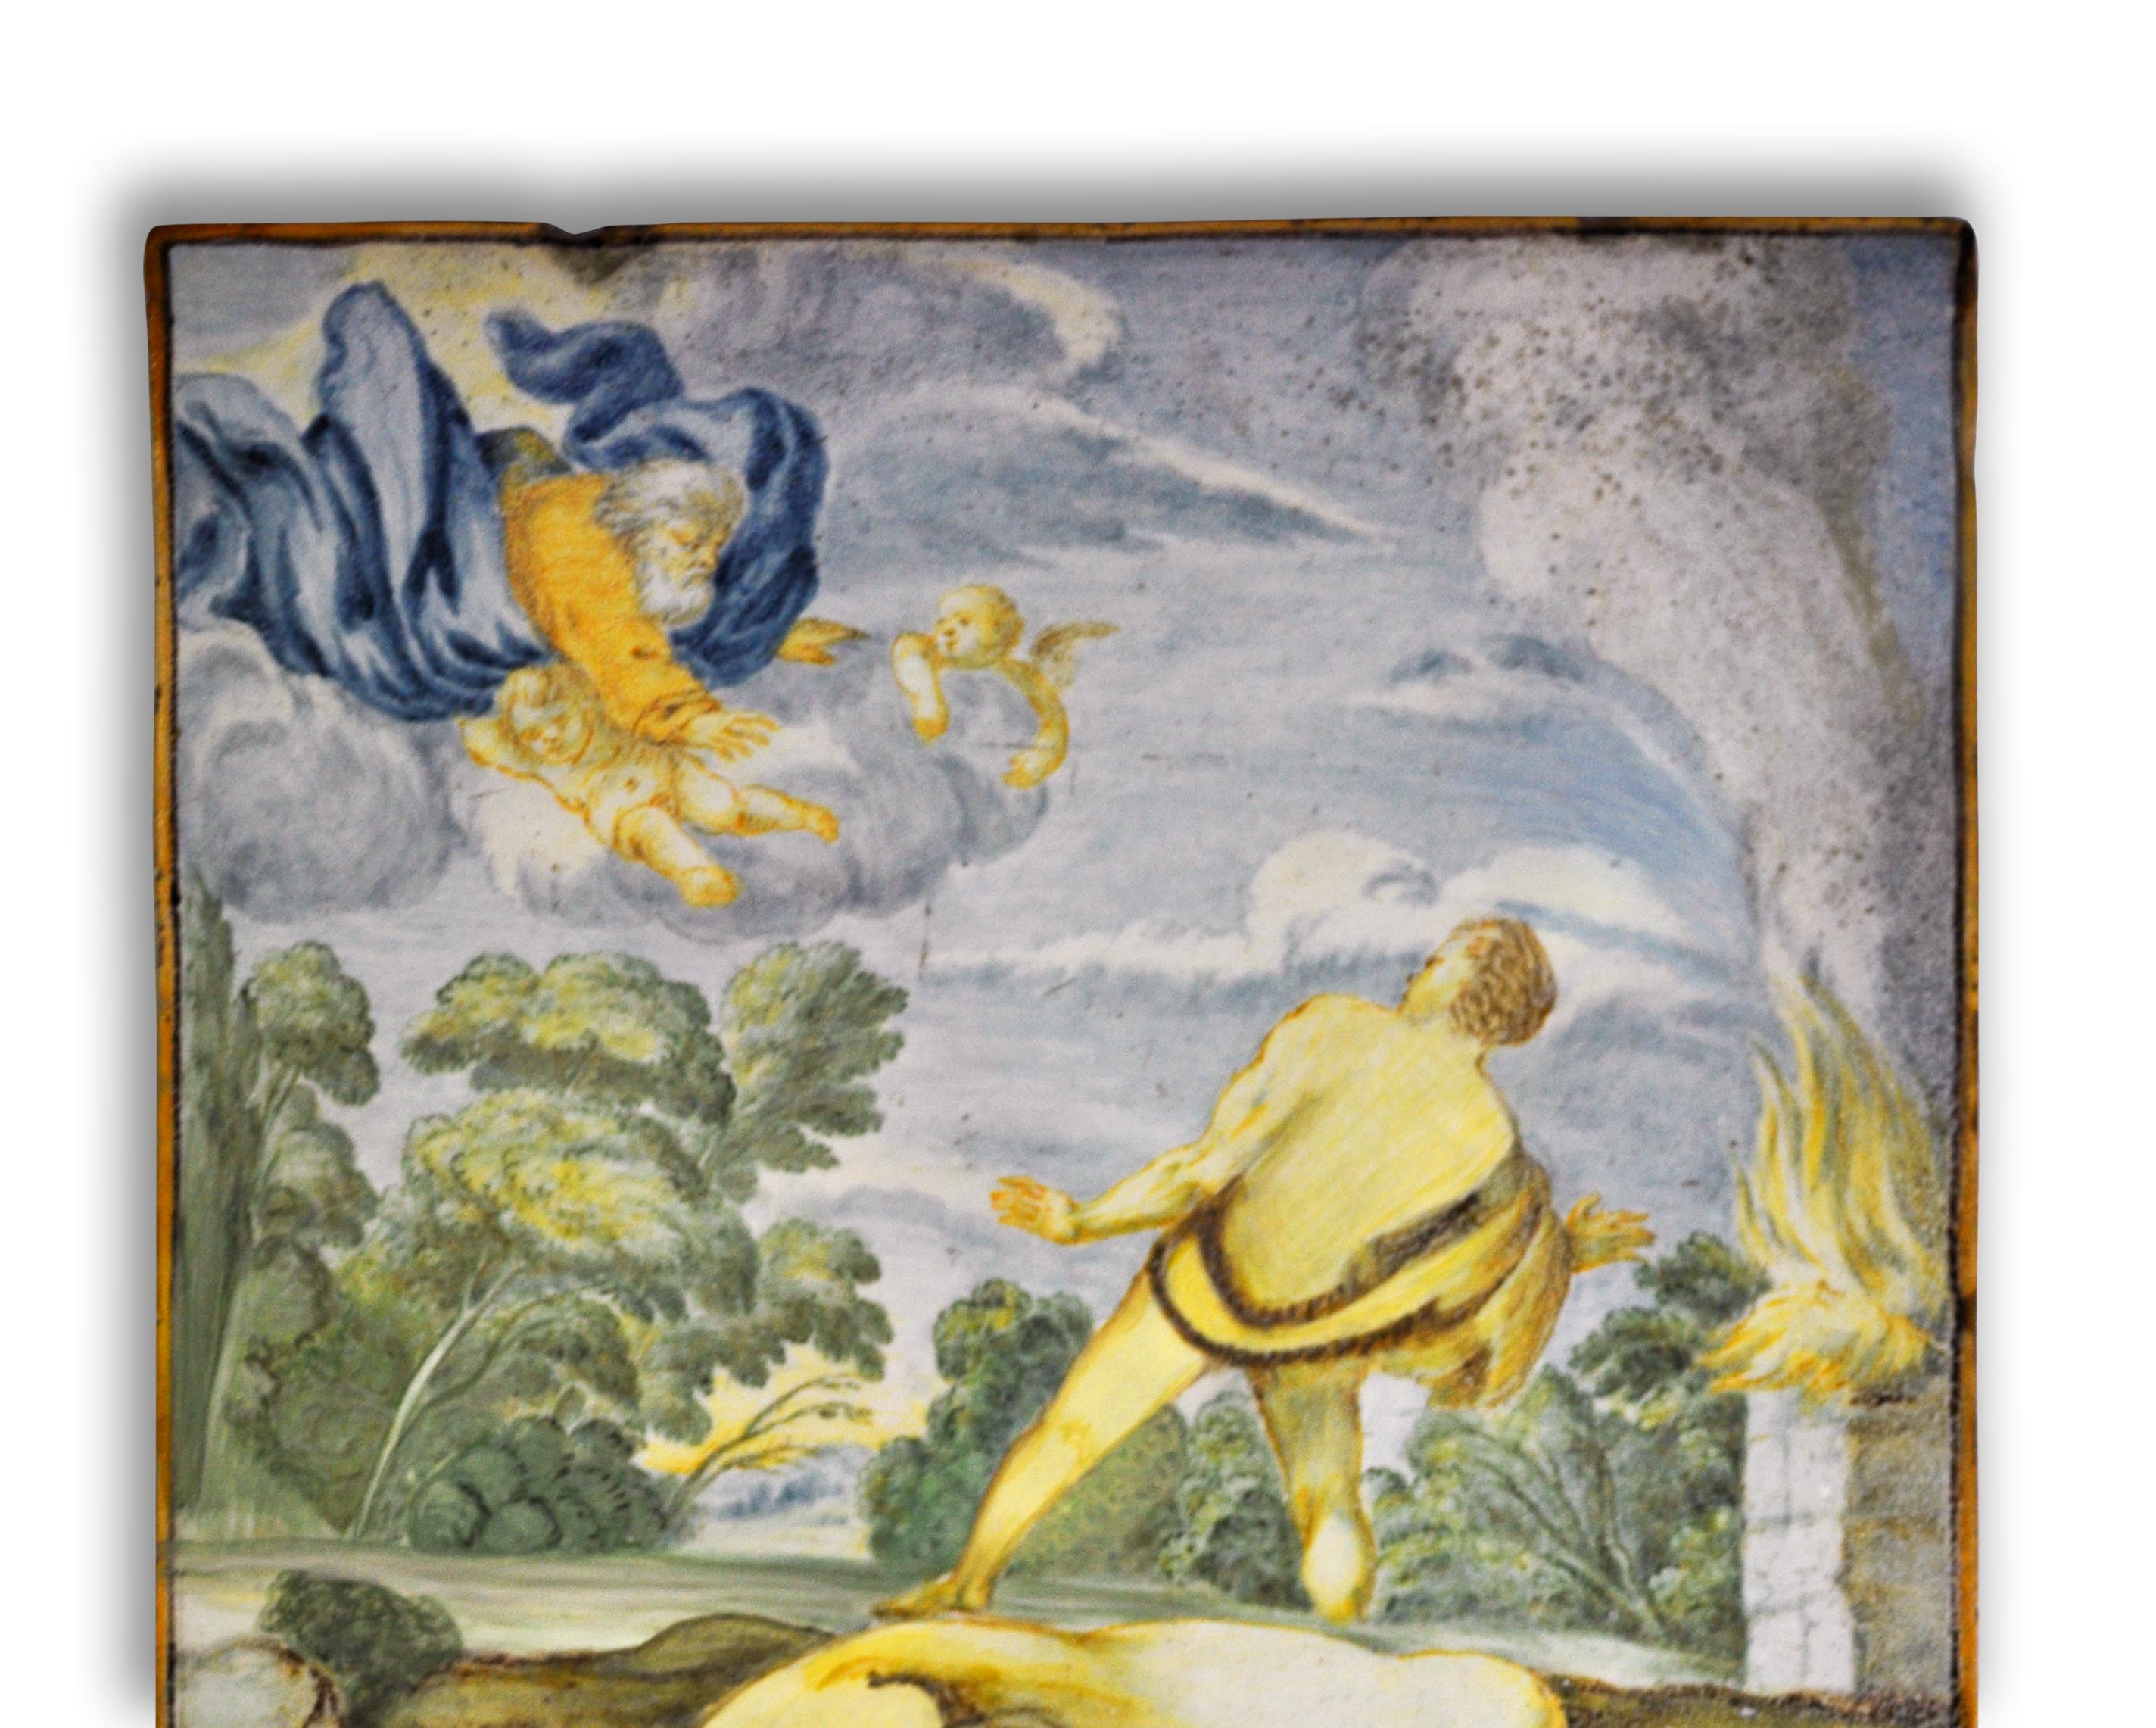 Cette céramique Castelli est un beau panneau en céramique représentant une scène religieuse, réalisé au 19ème siècle.

En excellent état, avec des couleurs vives. 

L'art de la céramique de Castelli, dans les Abruzzes, a des origines très